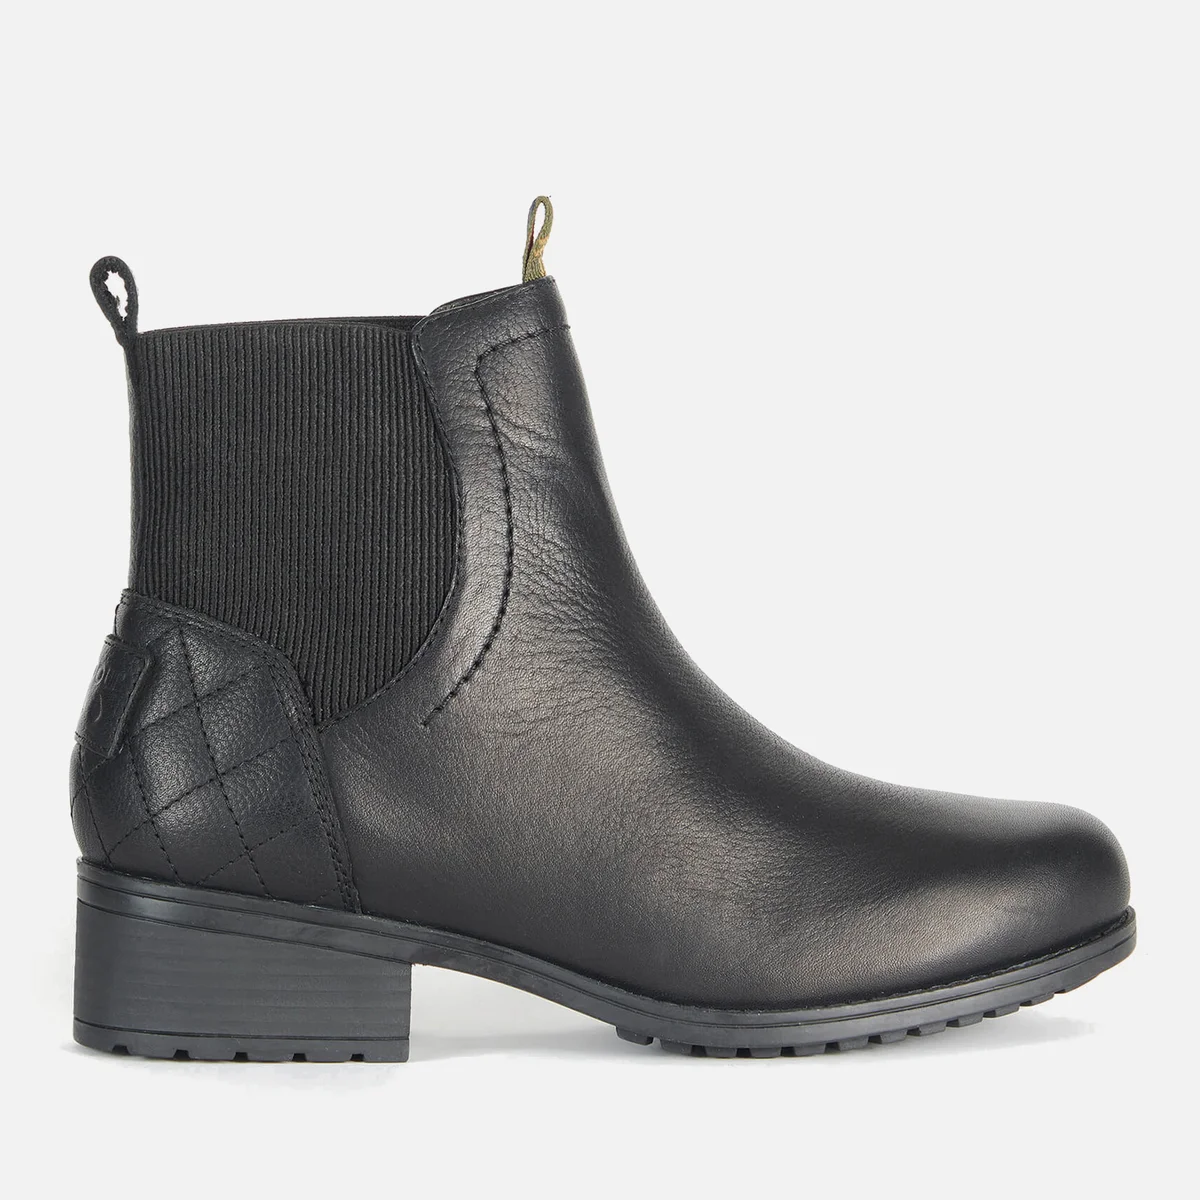 Barbour Women's Eden Waterproof Leather Chelsea Boots - Black Image 1